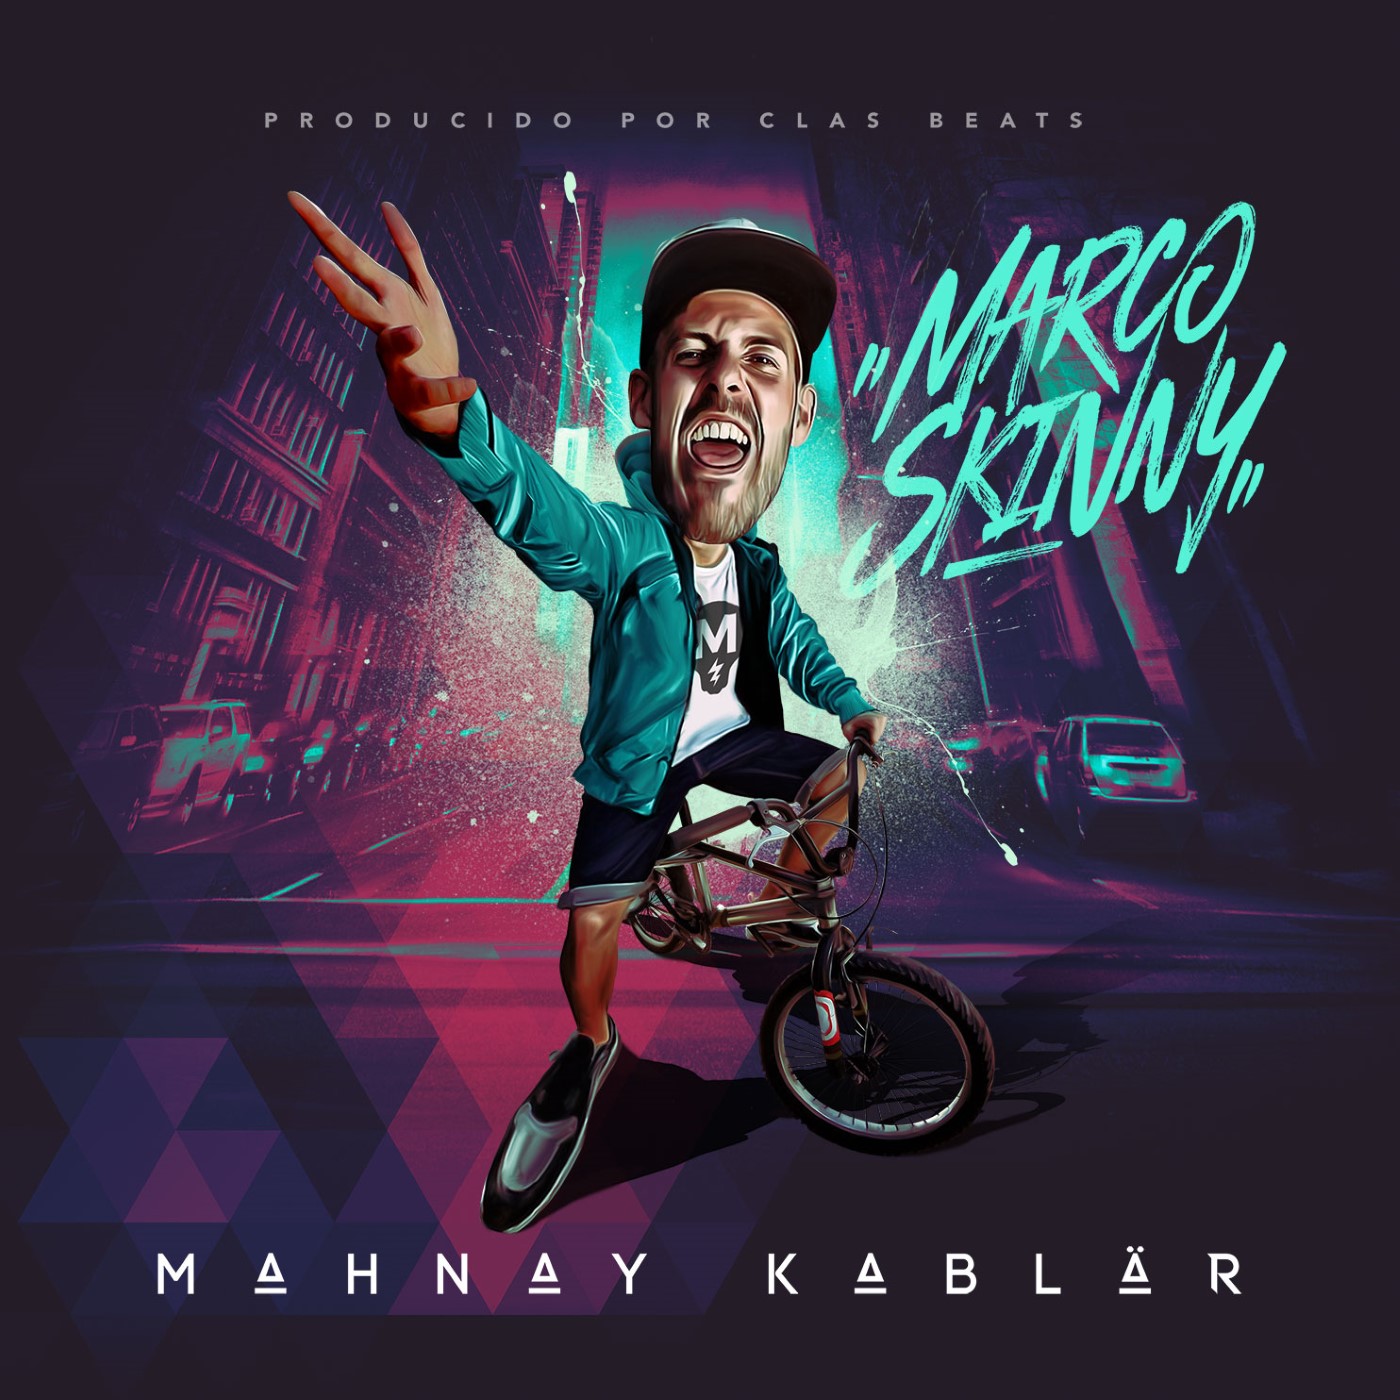 Marco Skinny - Mahnay kablär (Ficha con tracklist)